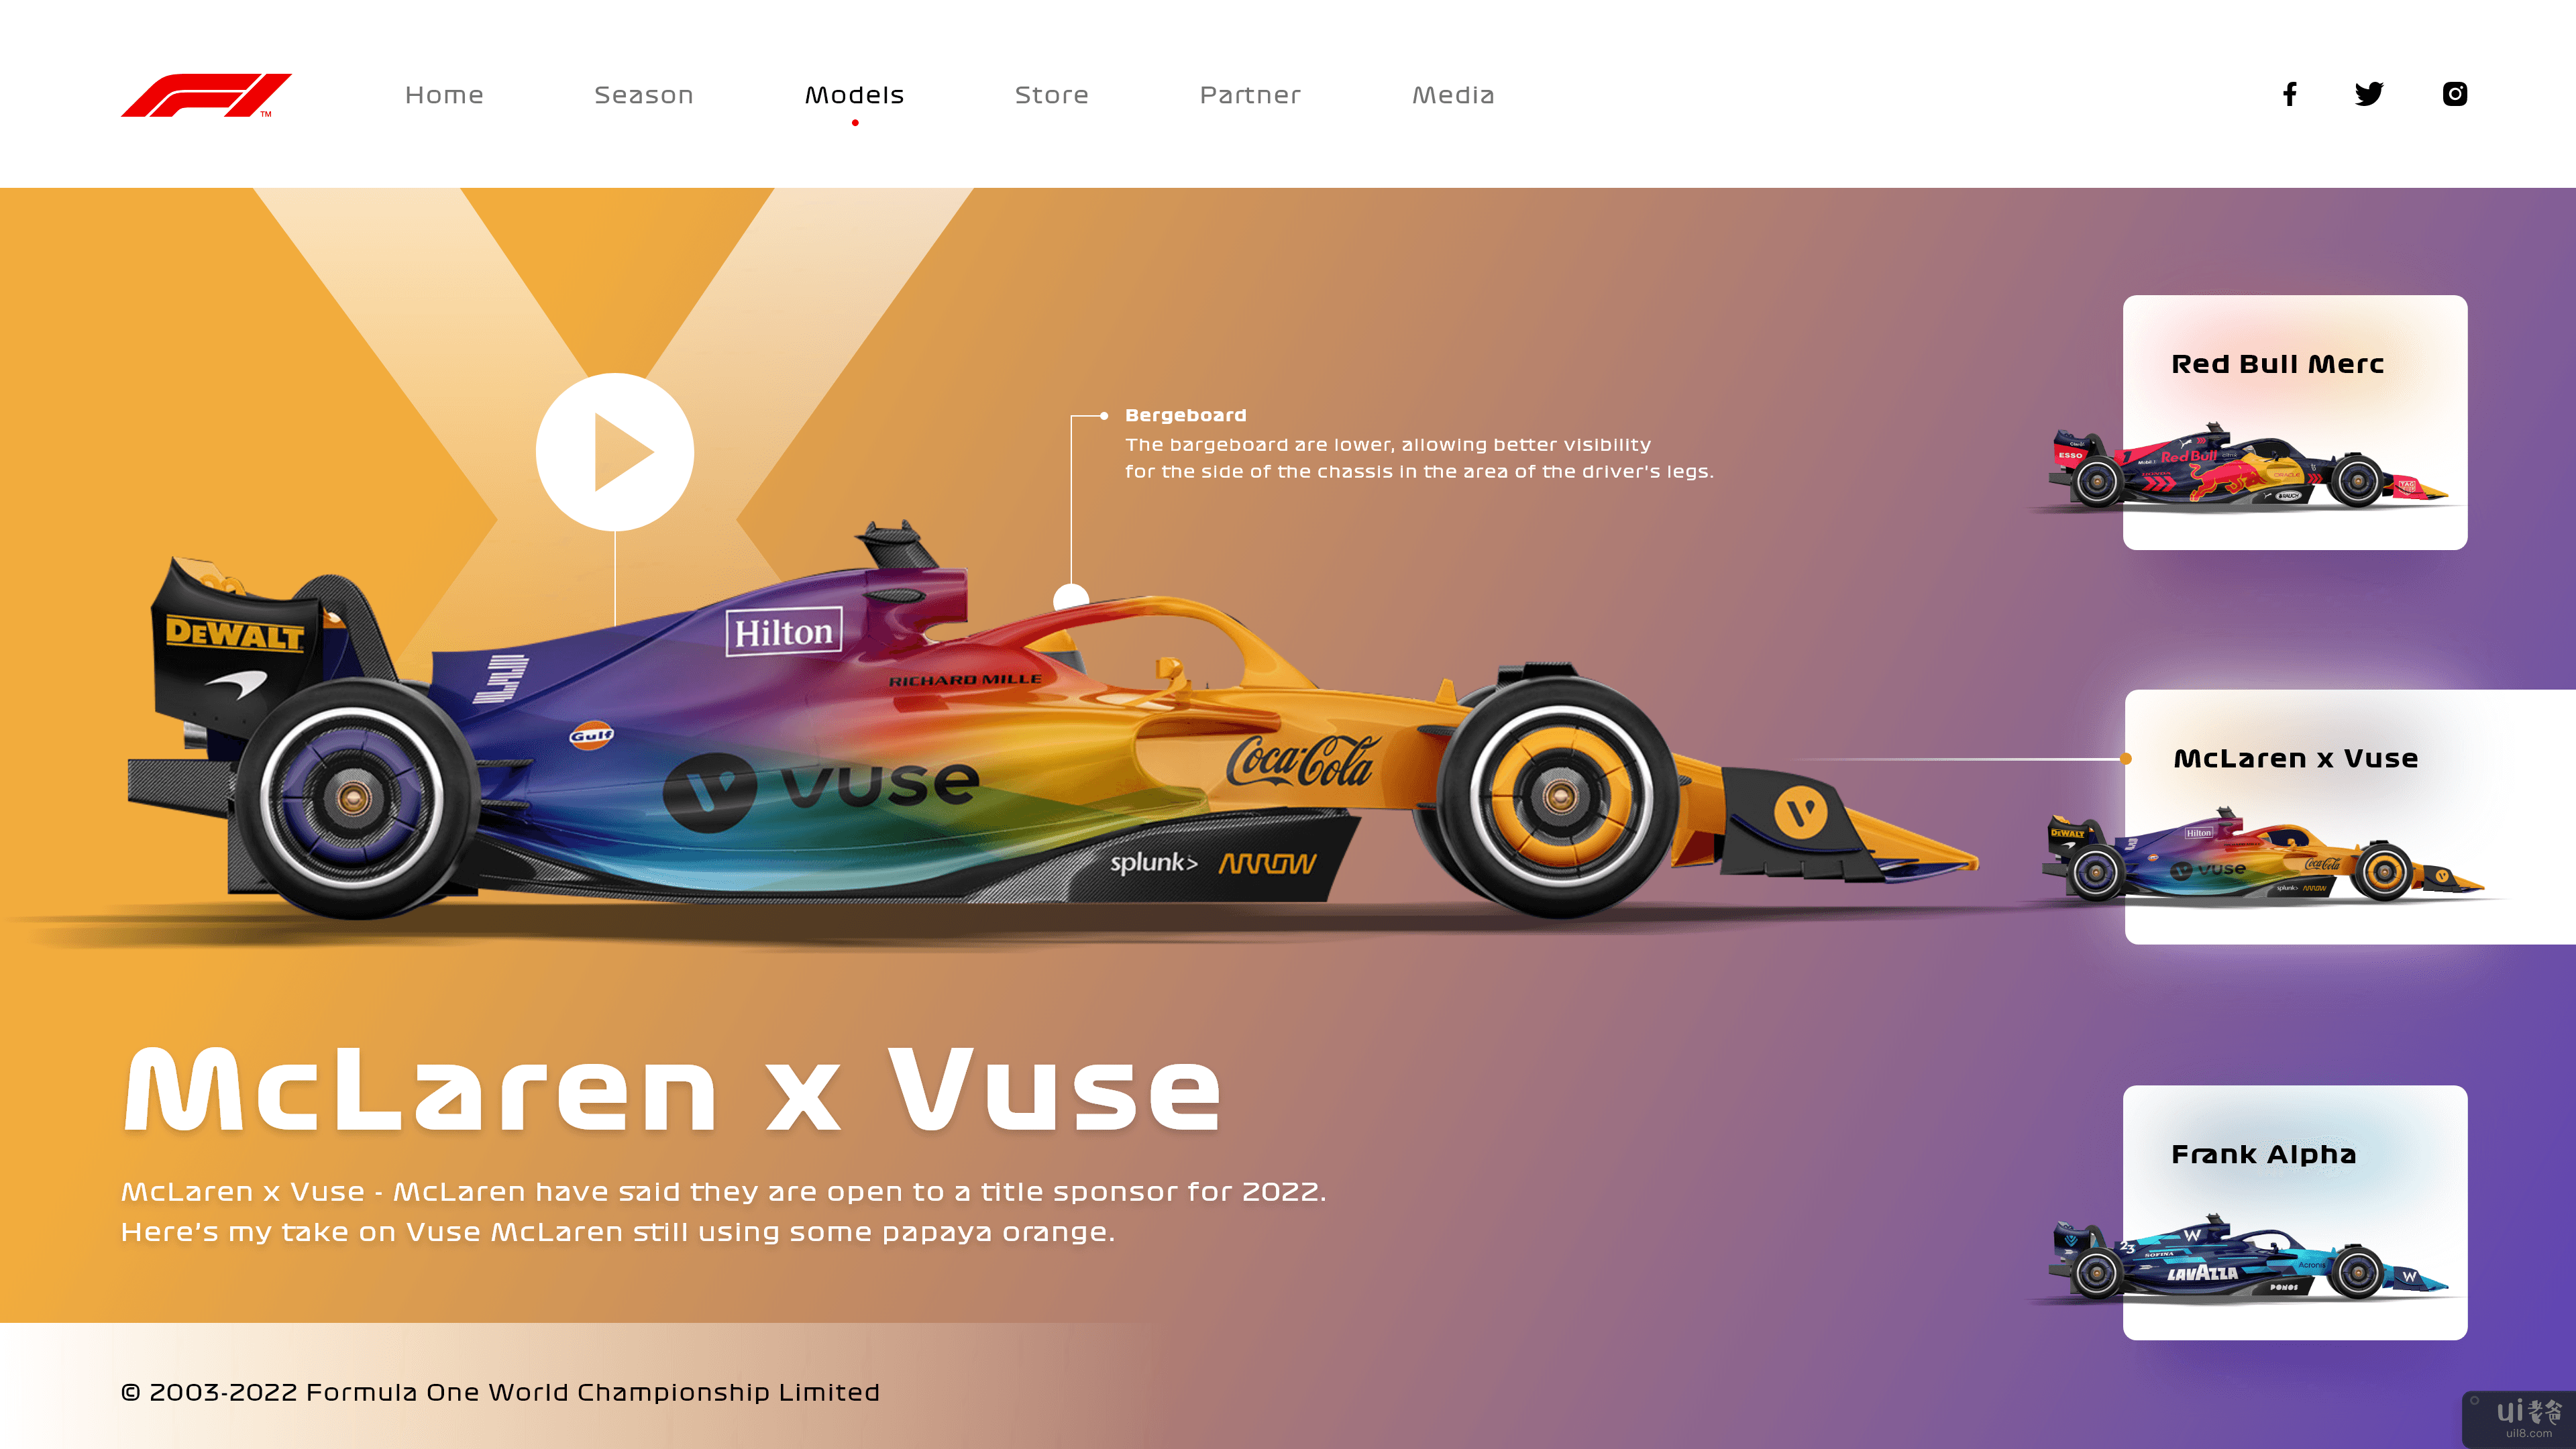 一级方程式网站重新设计 - Uplabs 挑战(Formula 1 Website Redesign - Uplabs challenge)插图1